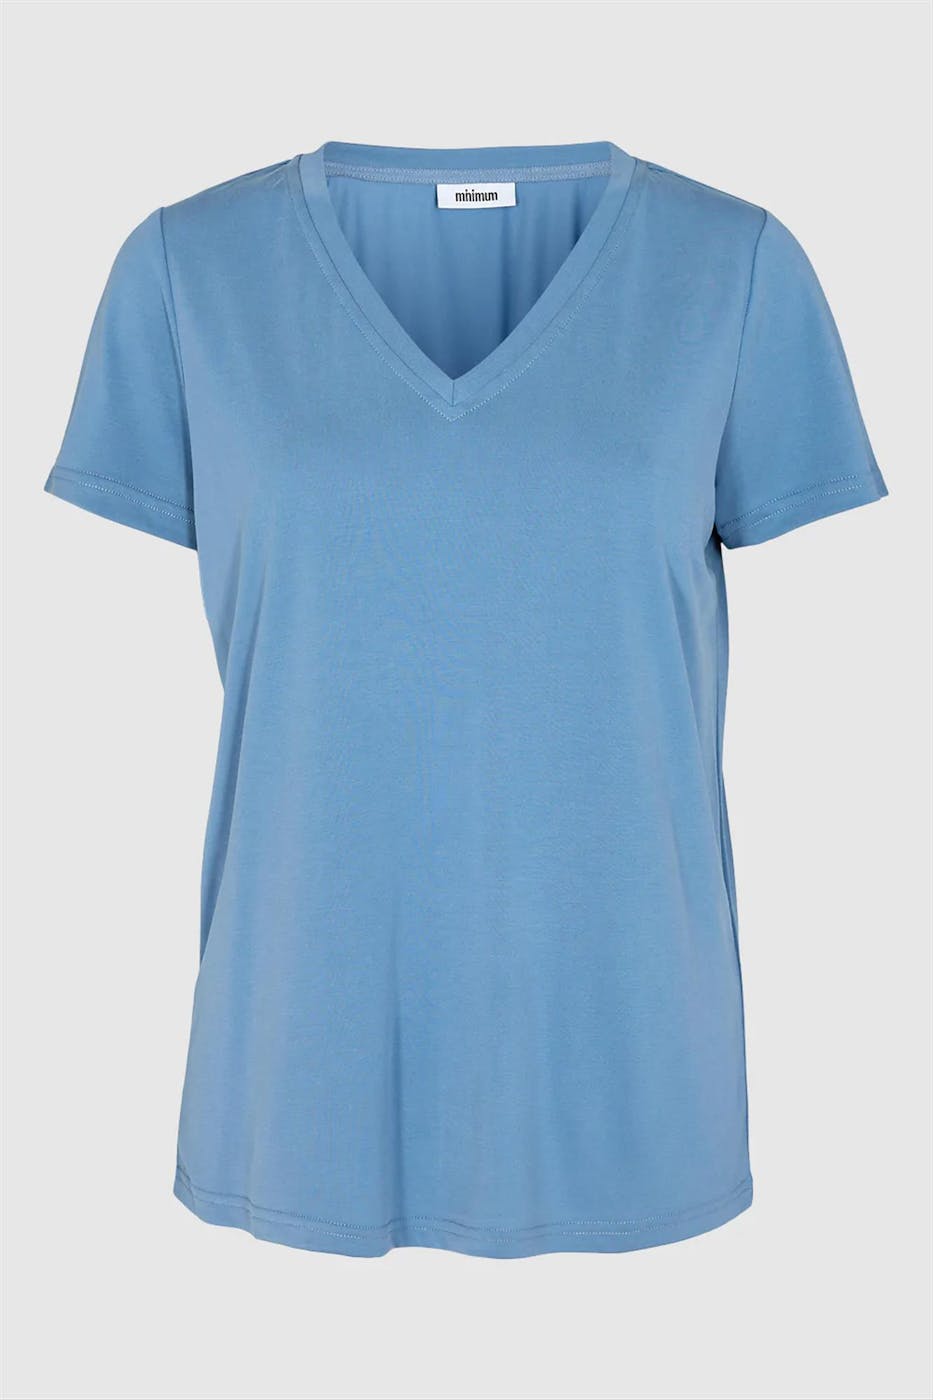 Minimum - Blauwe Rynih T-shirt